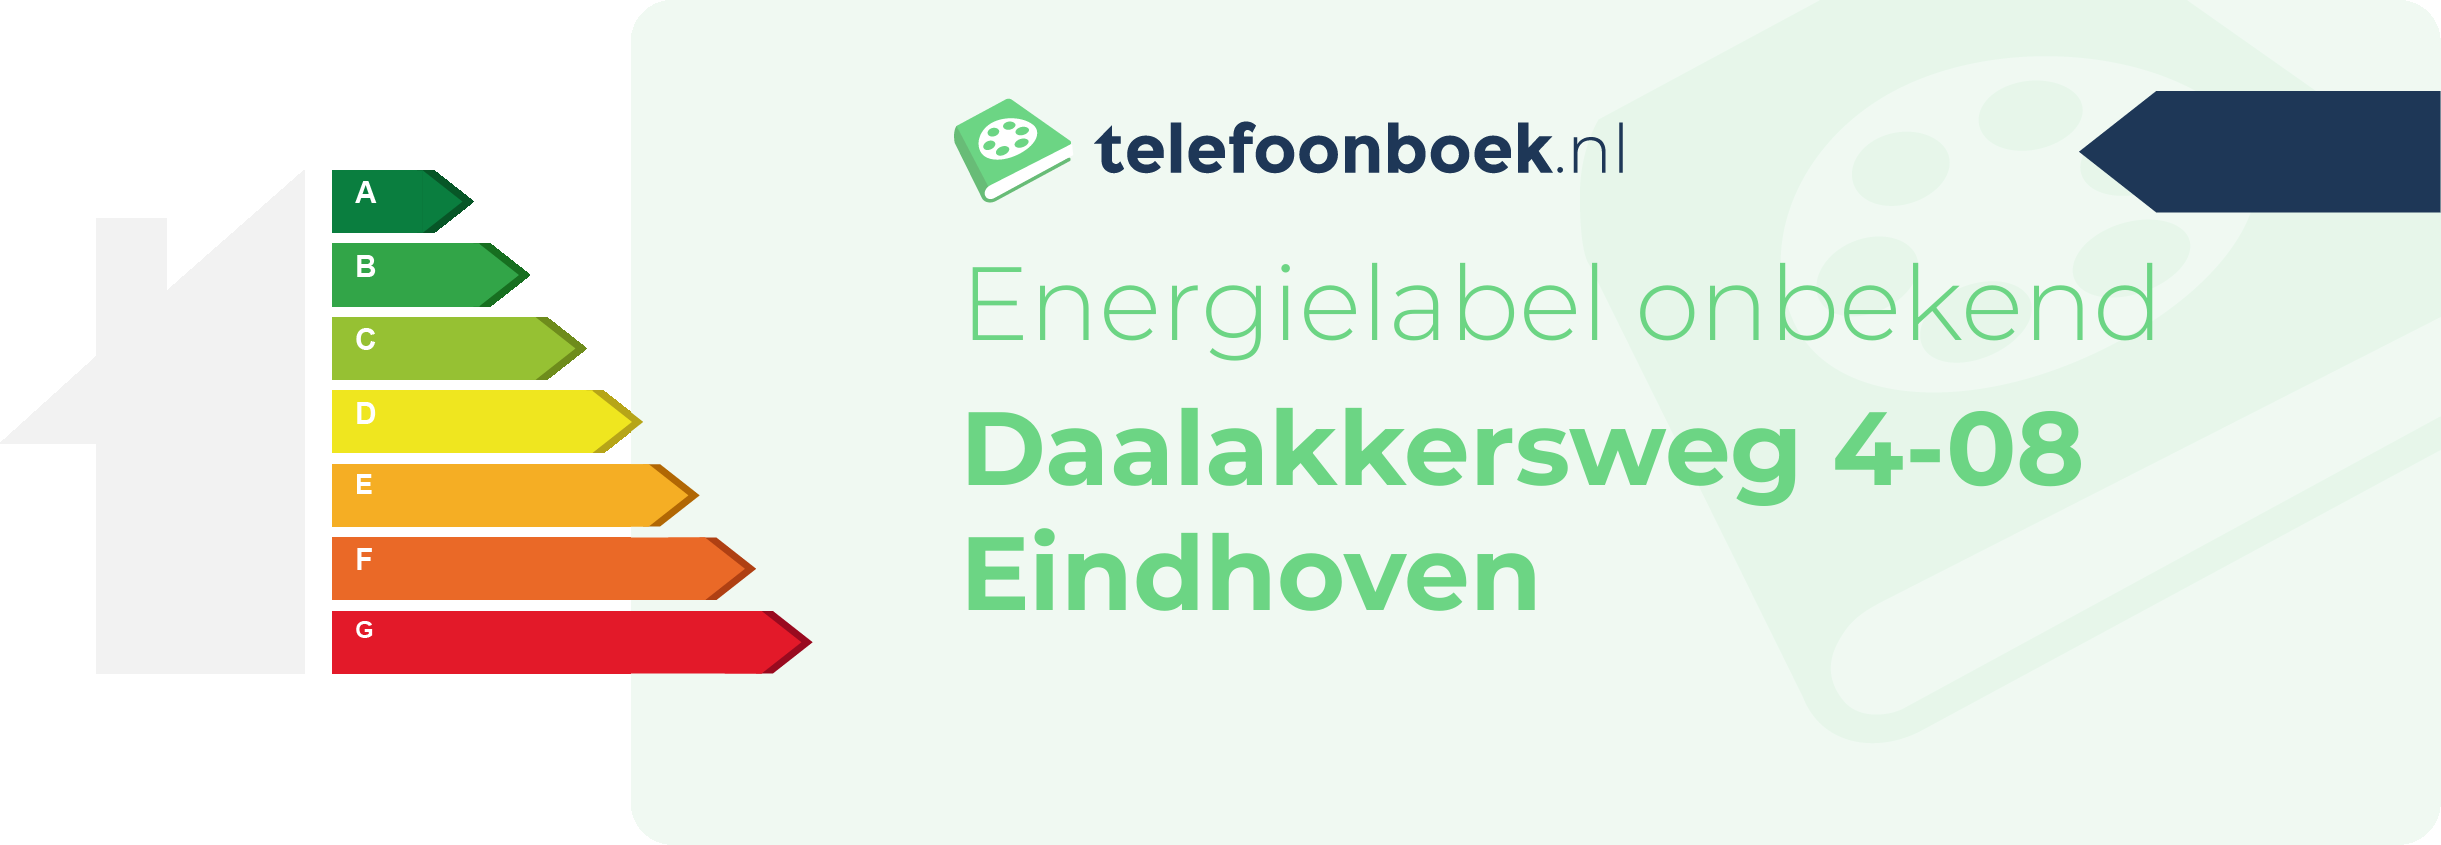 Energielabel Daalakkersweg 4-08 Eindhoven